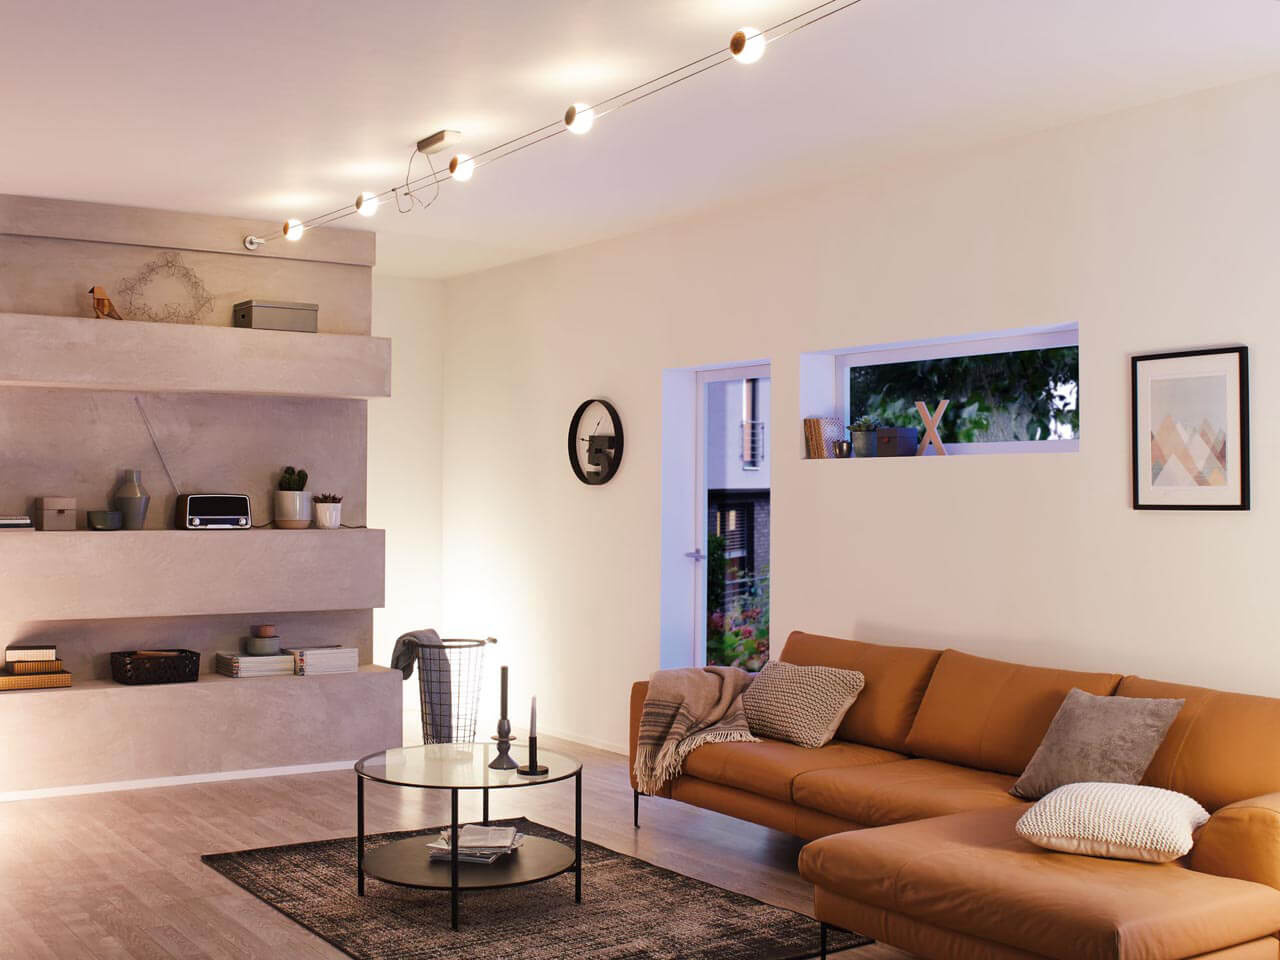 Освещение в квартире - почему стоит использовать точечные лампы и споты